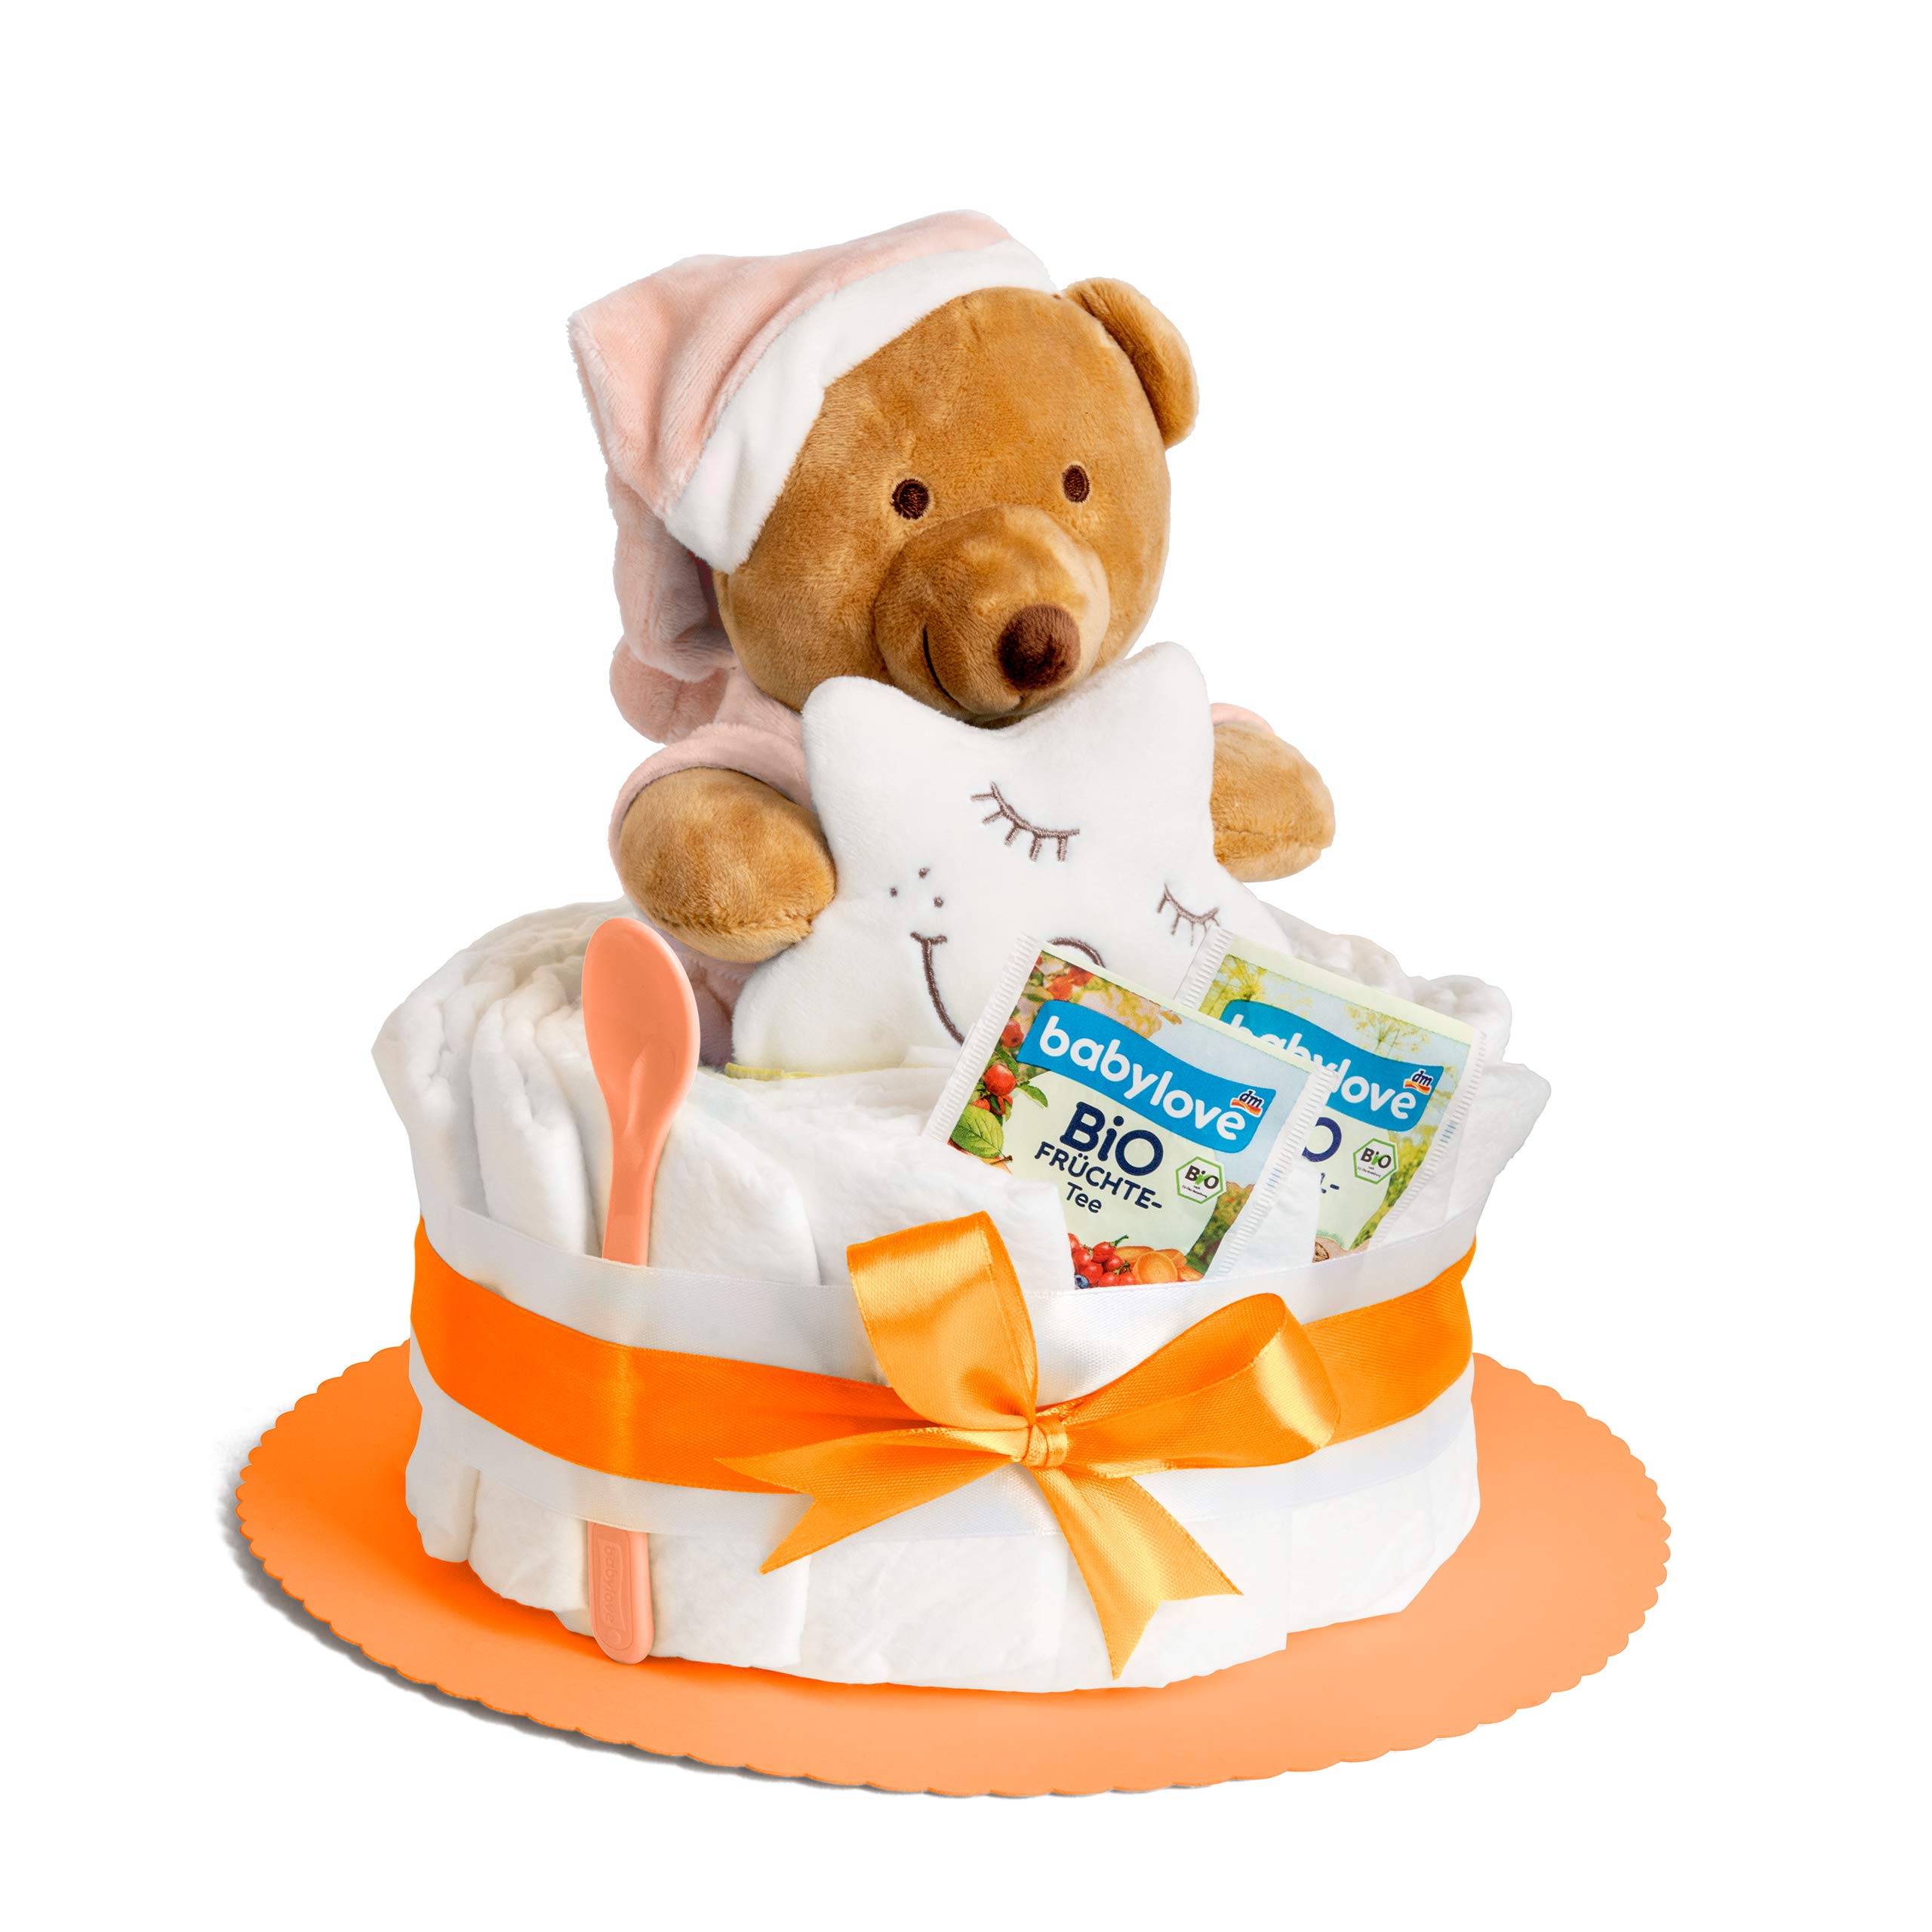 Windeltorte in Orange mit Kuscheltier für Mädchen oder Jungen, Pinkelparty Geschenke zur Geburt, Taufe oder Baby-Party - Geschenkidee mit neugeborene Windeln - Inkl. Glückwunschkarte